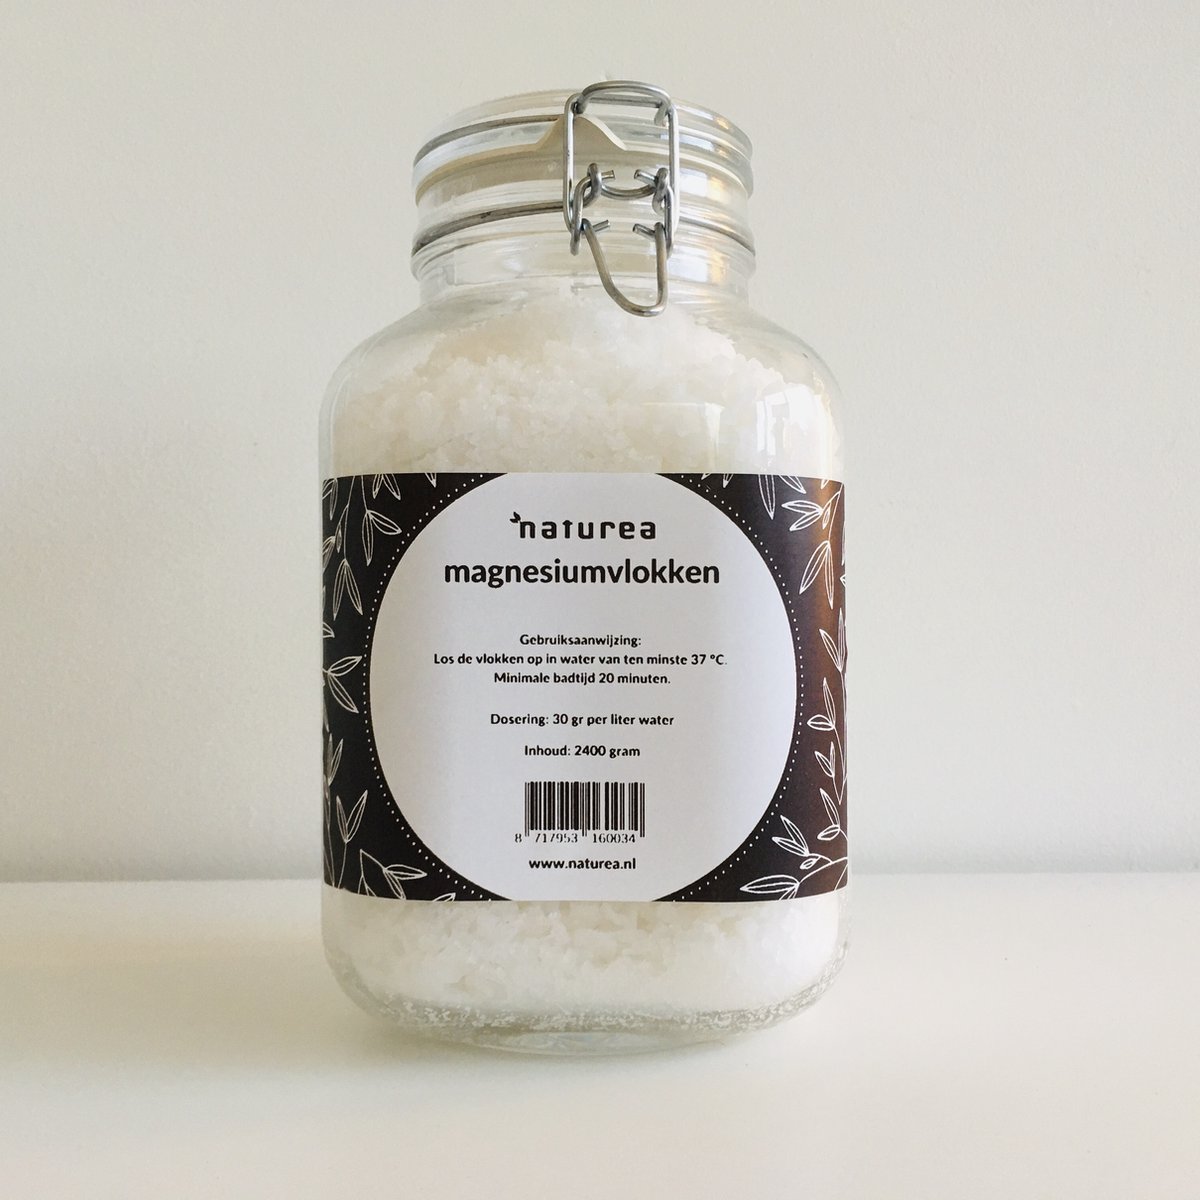 Naturea - Magnesium Vlokken - 2400 gram in hersluitbare glazen pot